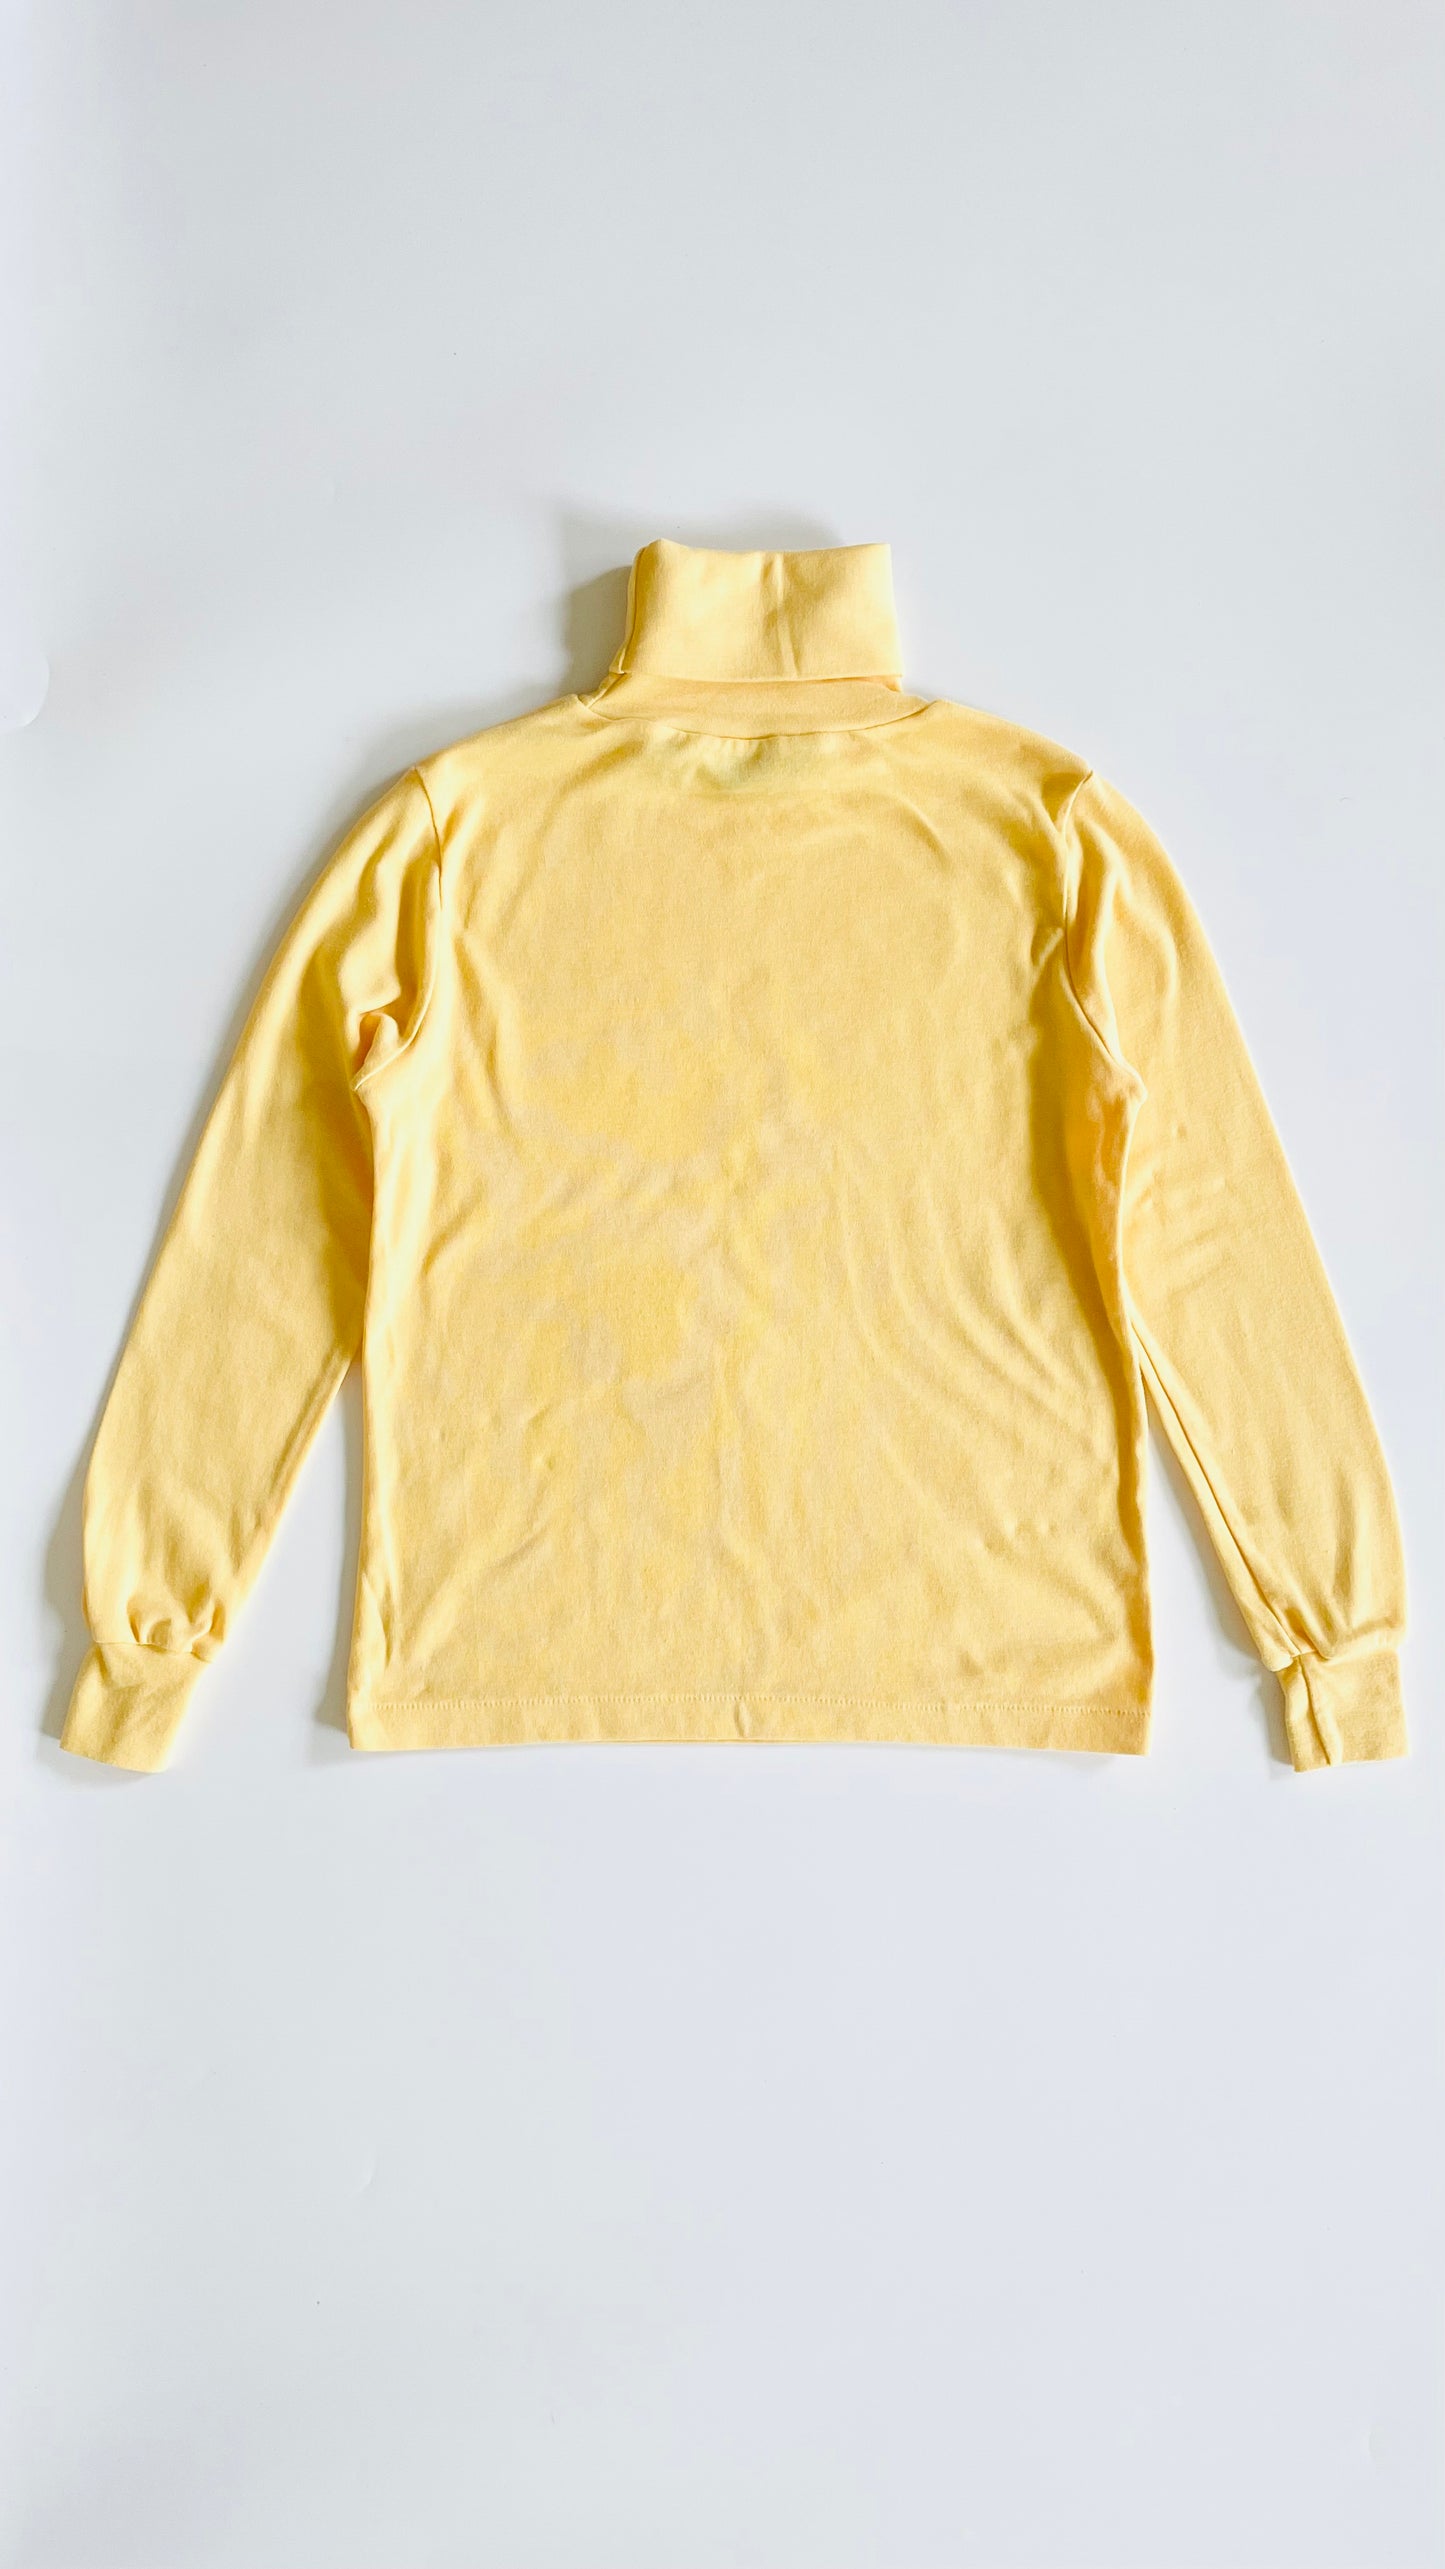 Vintage 70s Diane Von Furstenberg yellow knit turtleneck - Size S